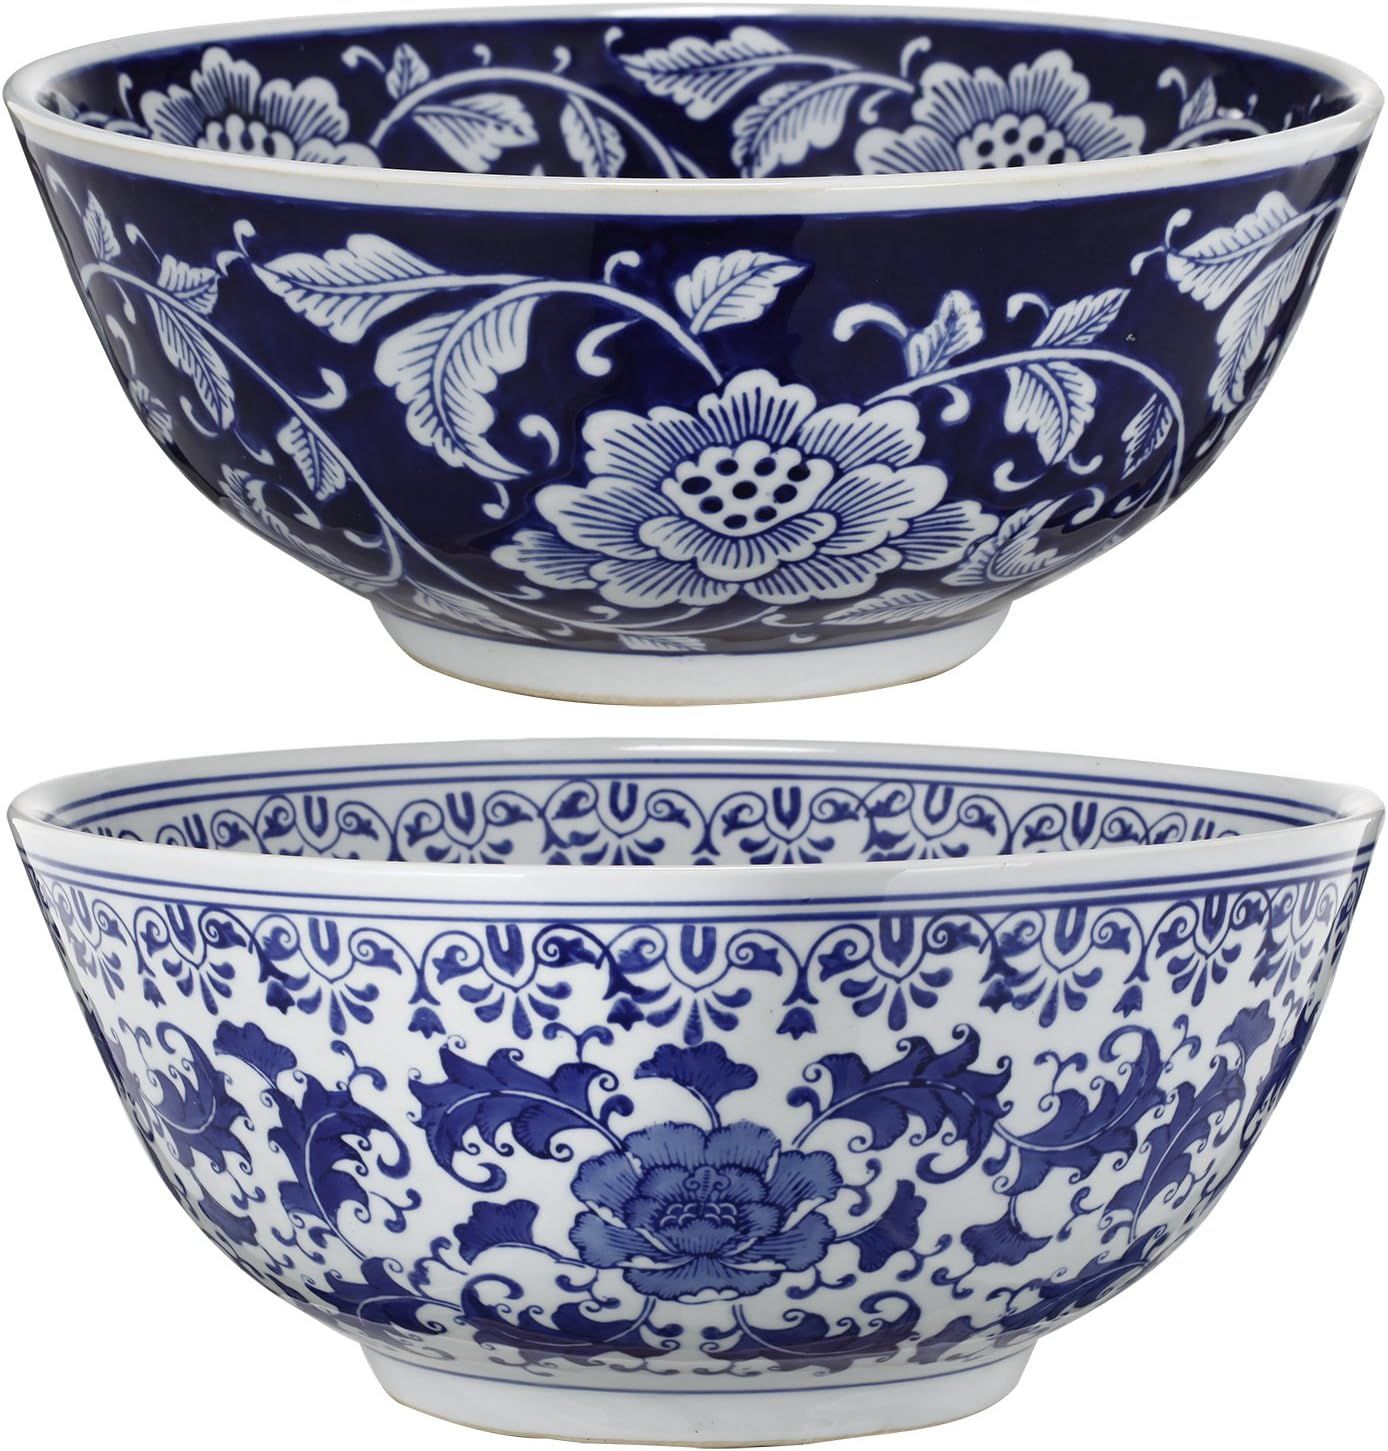 A&B Home Floral Blue & White Porcelain Decorative Bowl Ceramic Soup Bowl Set of 2 Fruit Bowl Chin... | Amazon (US)